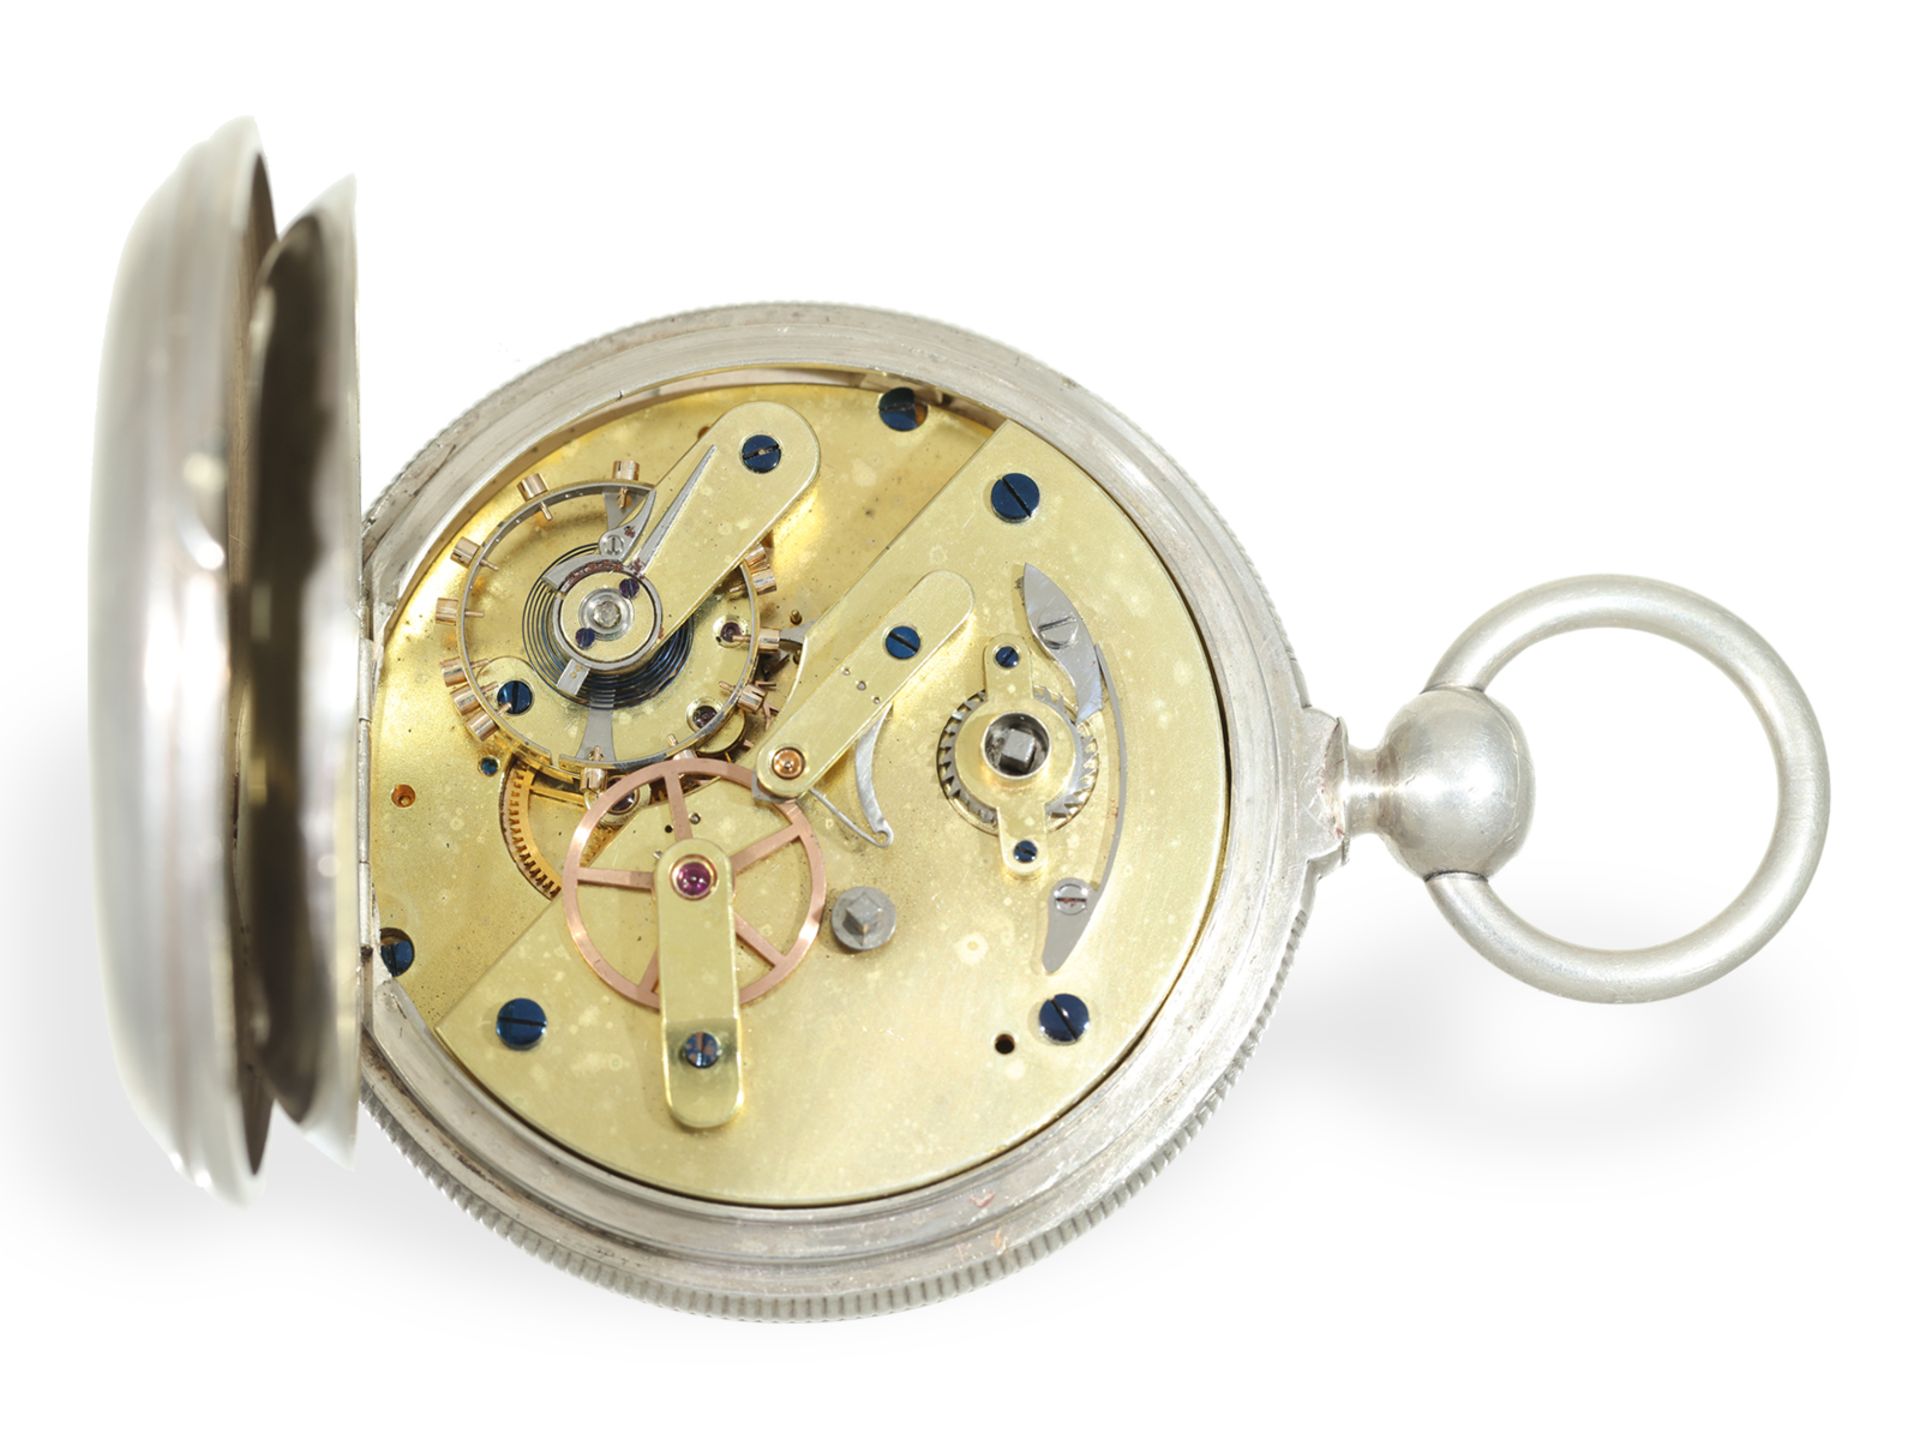 Taschenuhr: extrem seltenes französisches Beobachtungschronometer, Rötig Havre "Inventeur", ca.1865 - Bild 3 aus 7